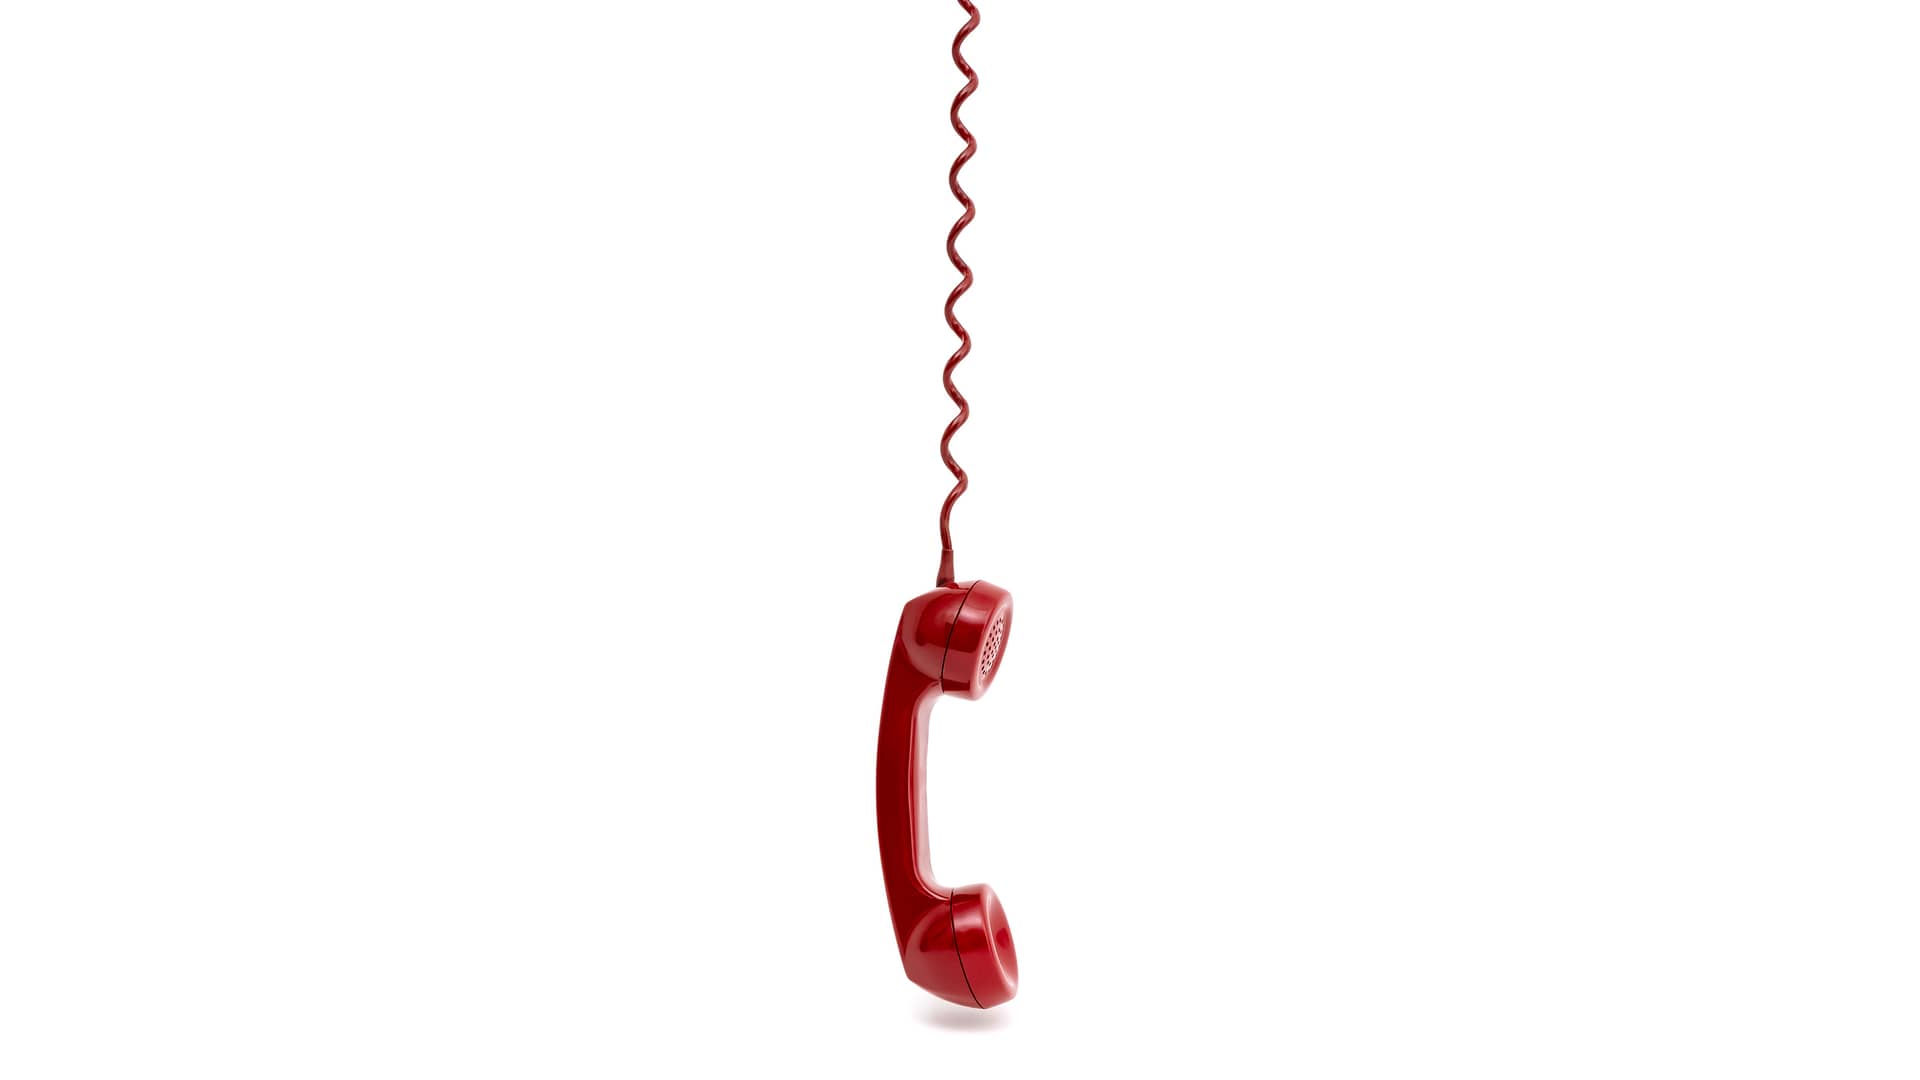 Teléfono fijo colgando de su cable simboliza tarifas descatalogadas de lowi